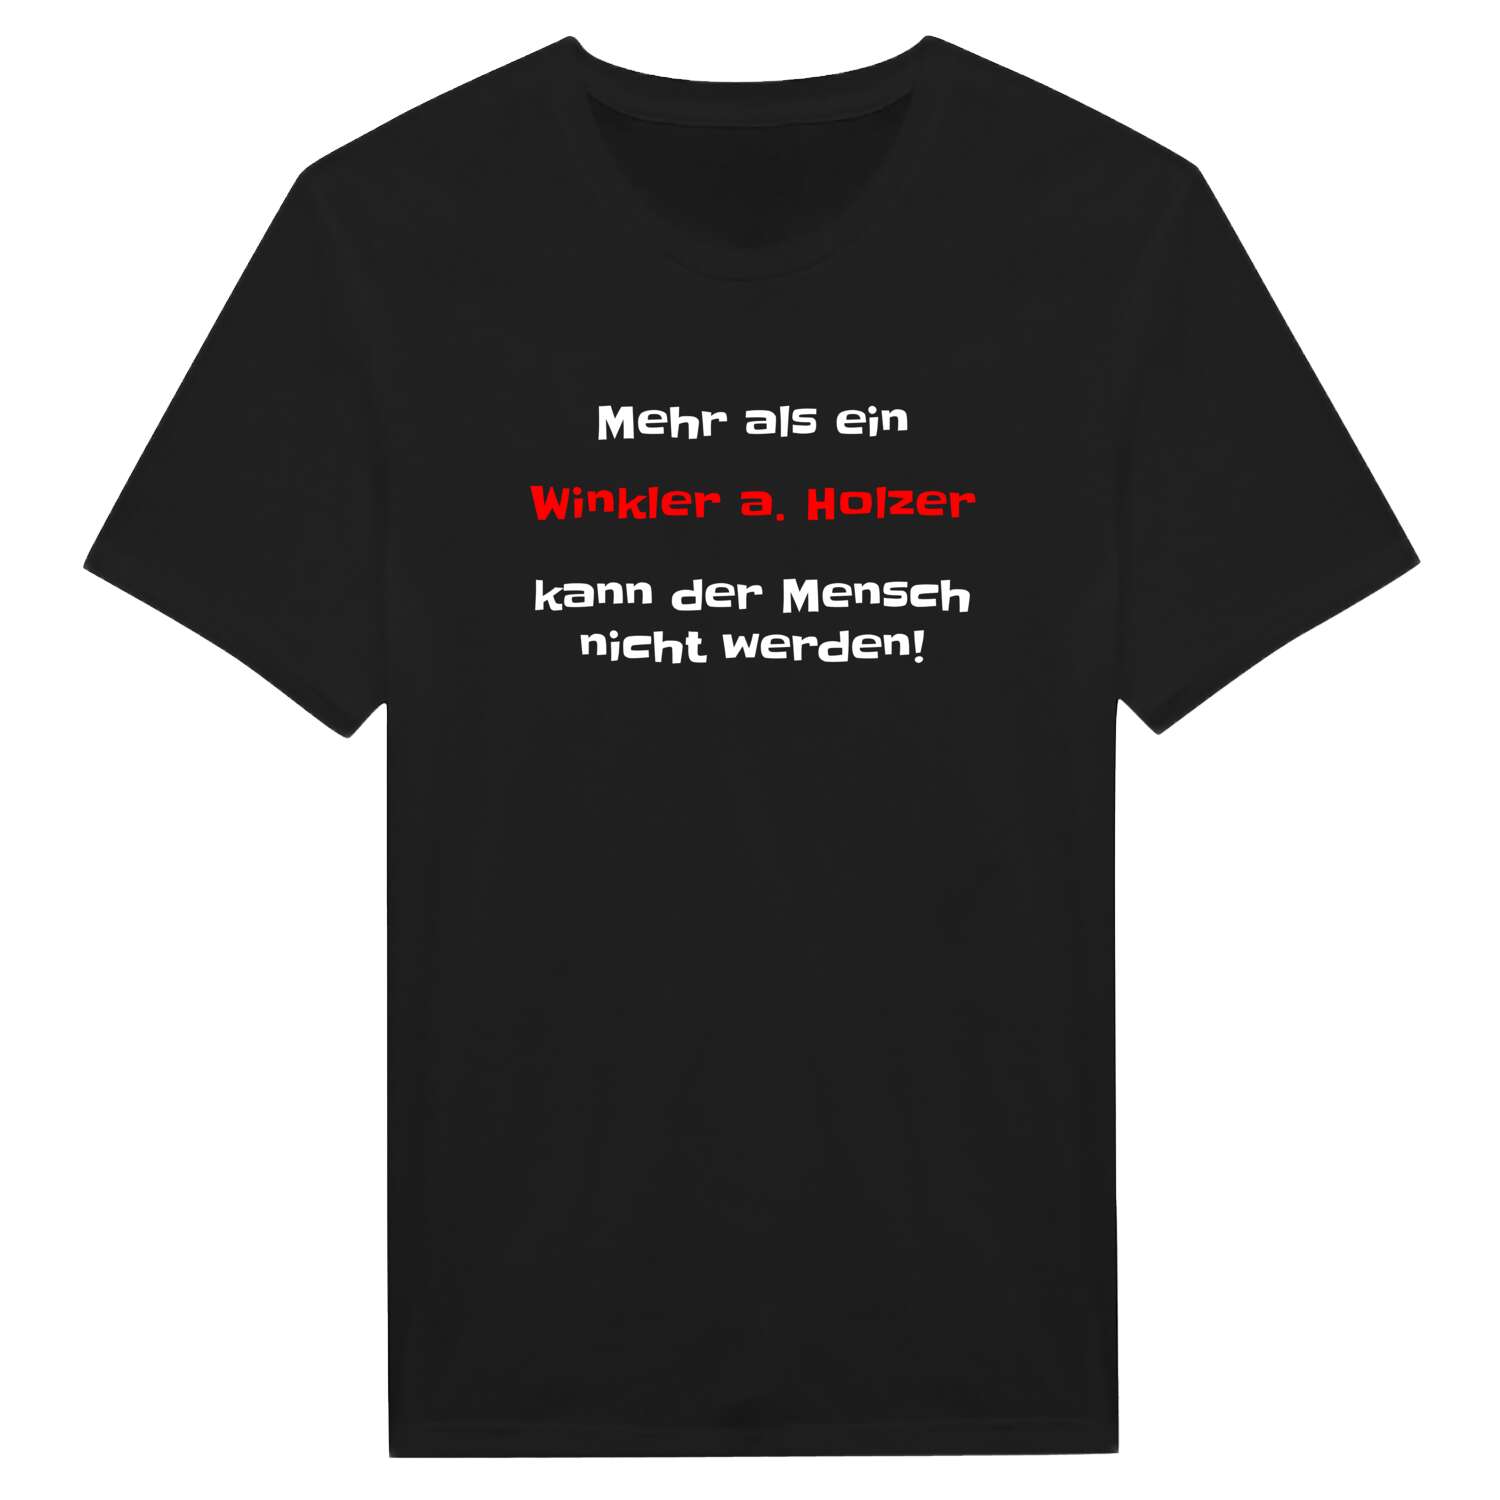 Winkler a. Holz T-Shirt »Mehr als ein«